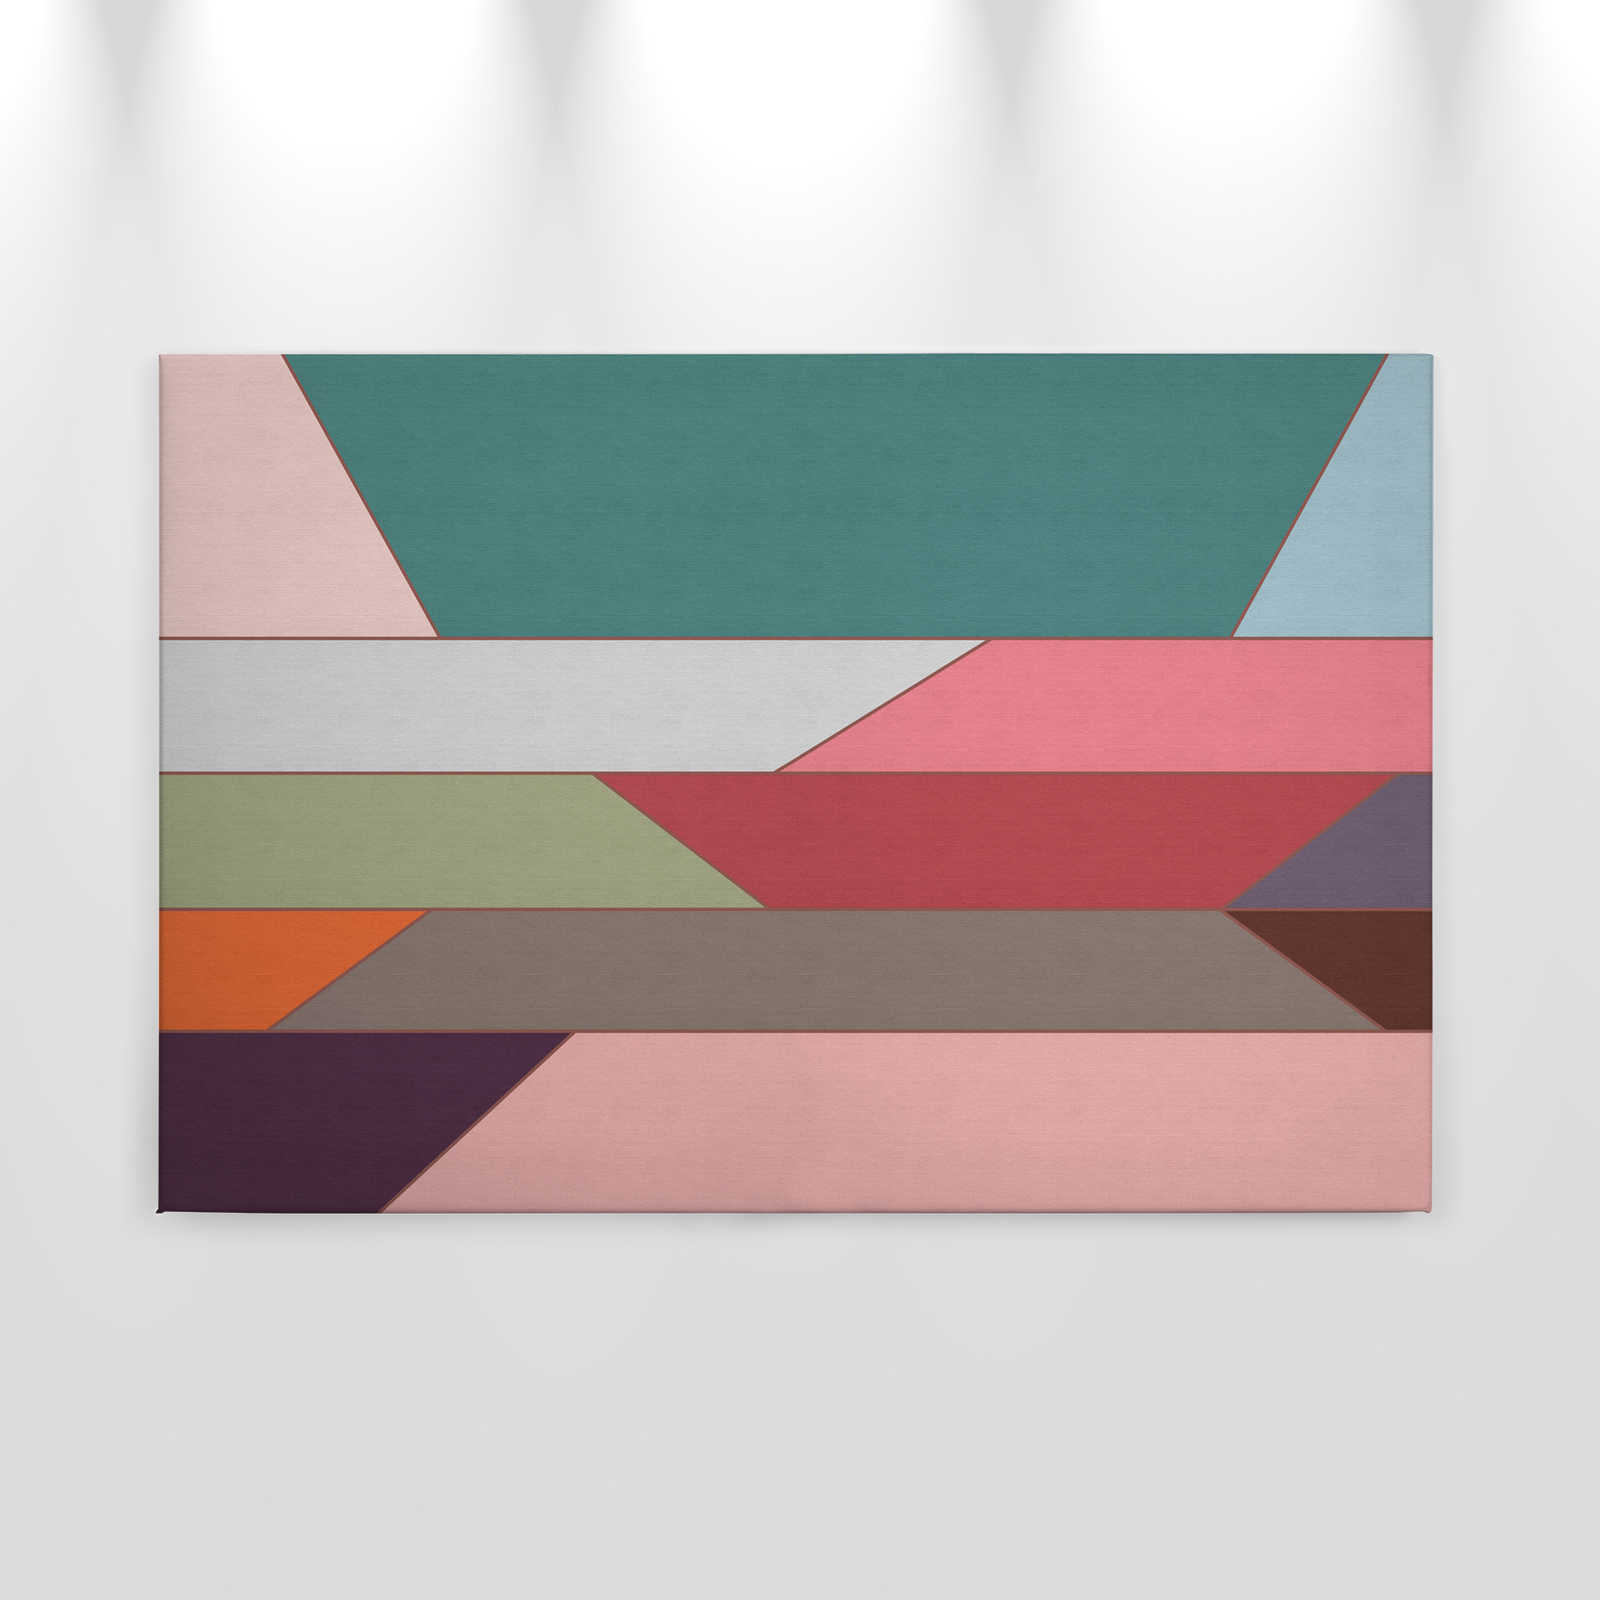             Geometry 2 - Canvas schilderij met kleurrijk horizontaal streeppatroon in ribbelstructuur - 0.90 m x 0.60 m
        